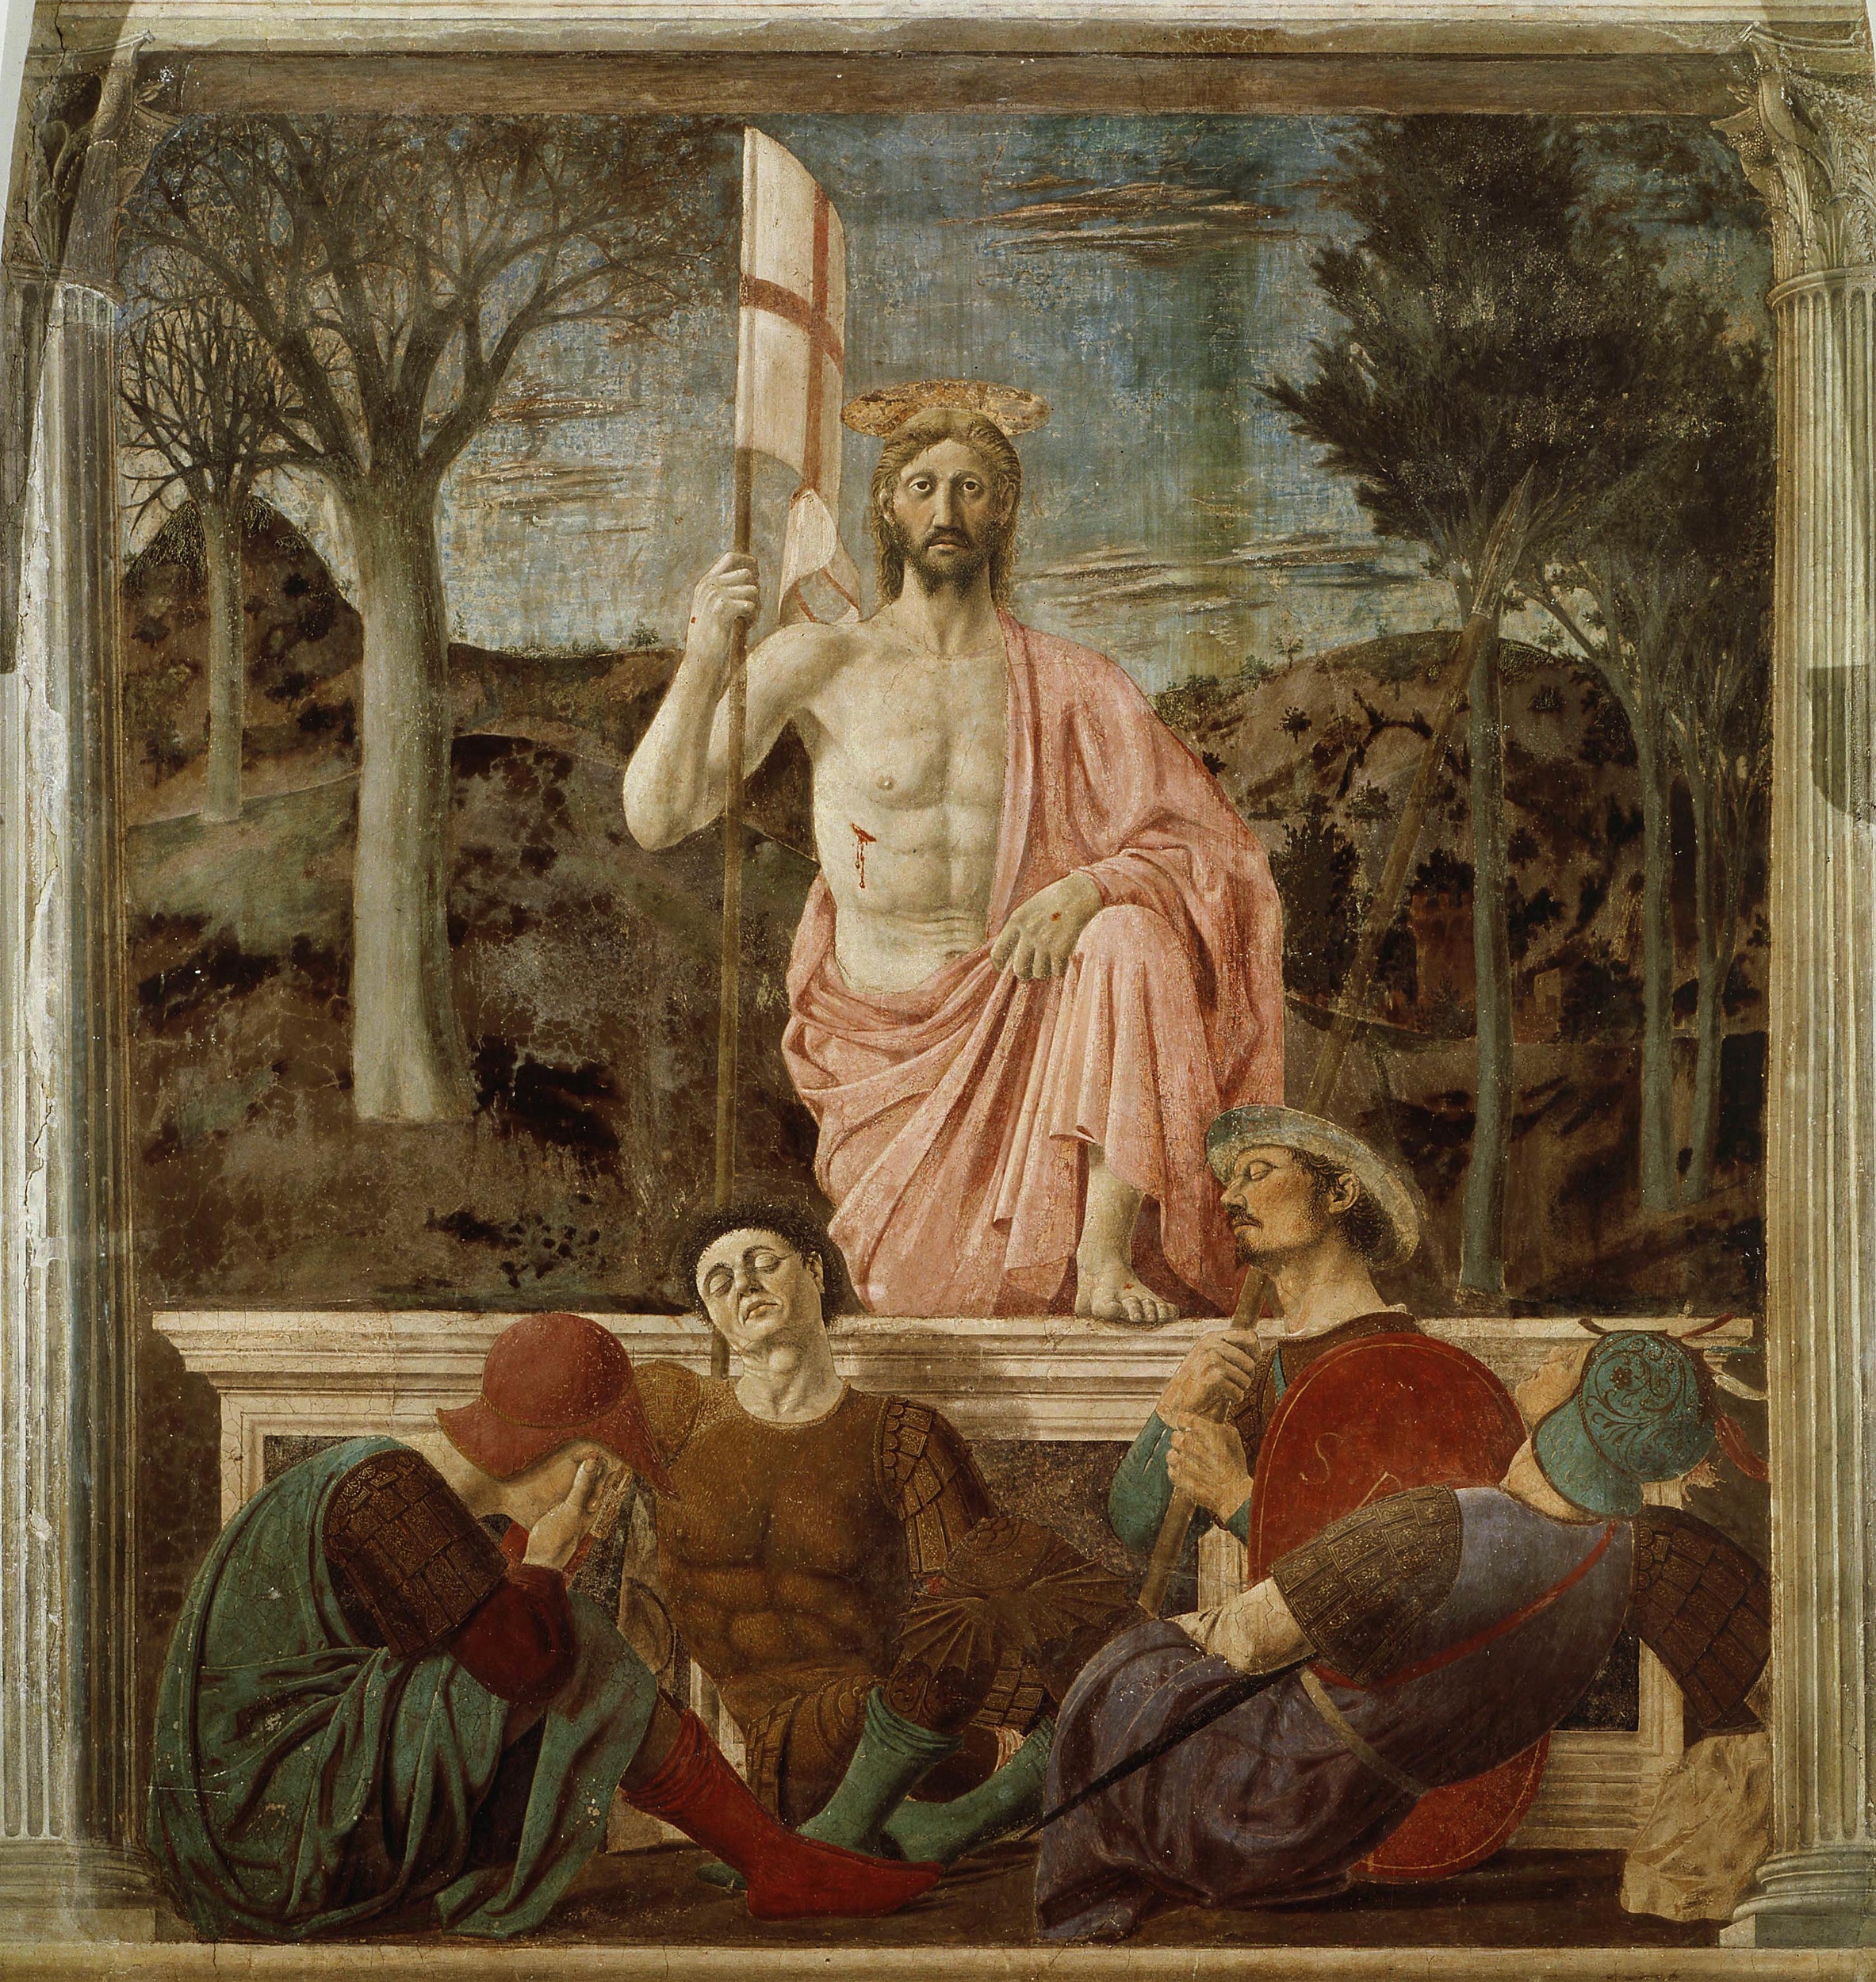 复活 by 皮耶罗 德拉 弗朗切斯卡 - 1465 圣塞波尔克罗市政博物馆